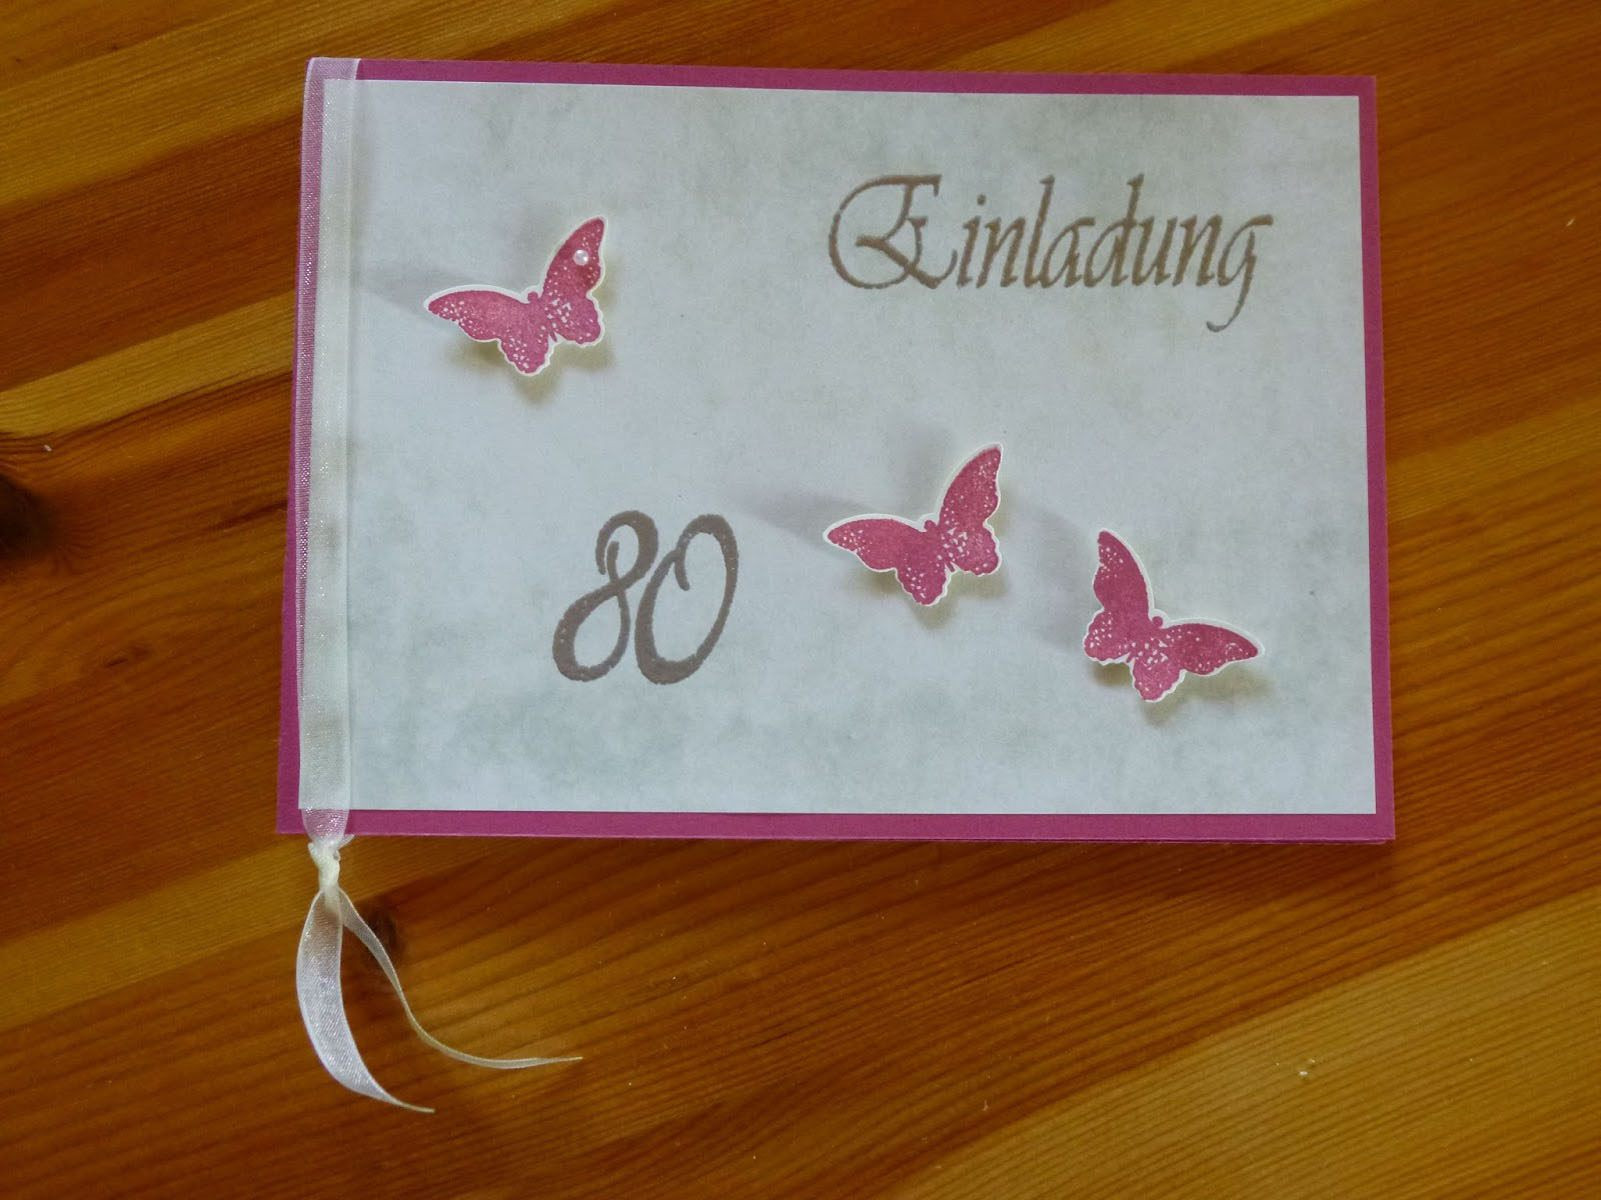 Geburtstagssprüche Zum 80. Geburtstag
 Einladung Zum 80 Geburtstag Einladung Zum 80 Geburtstag